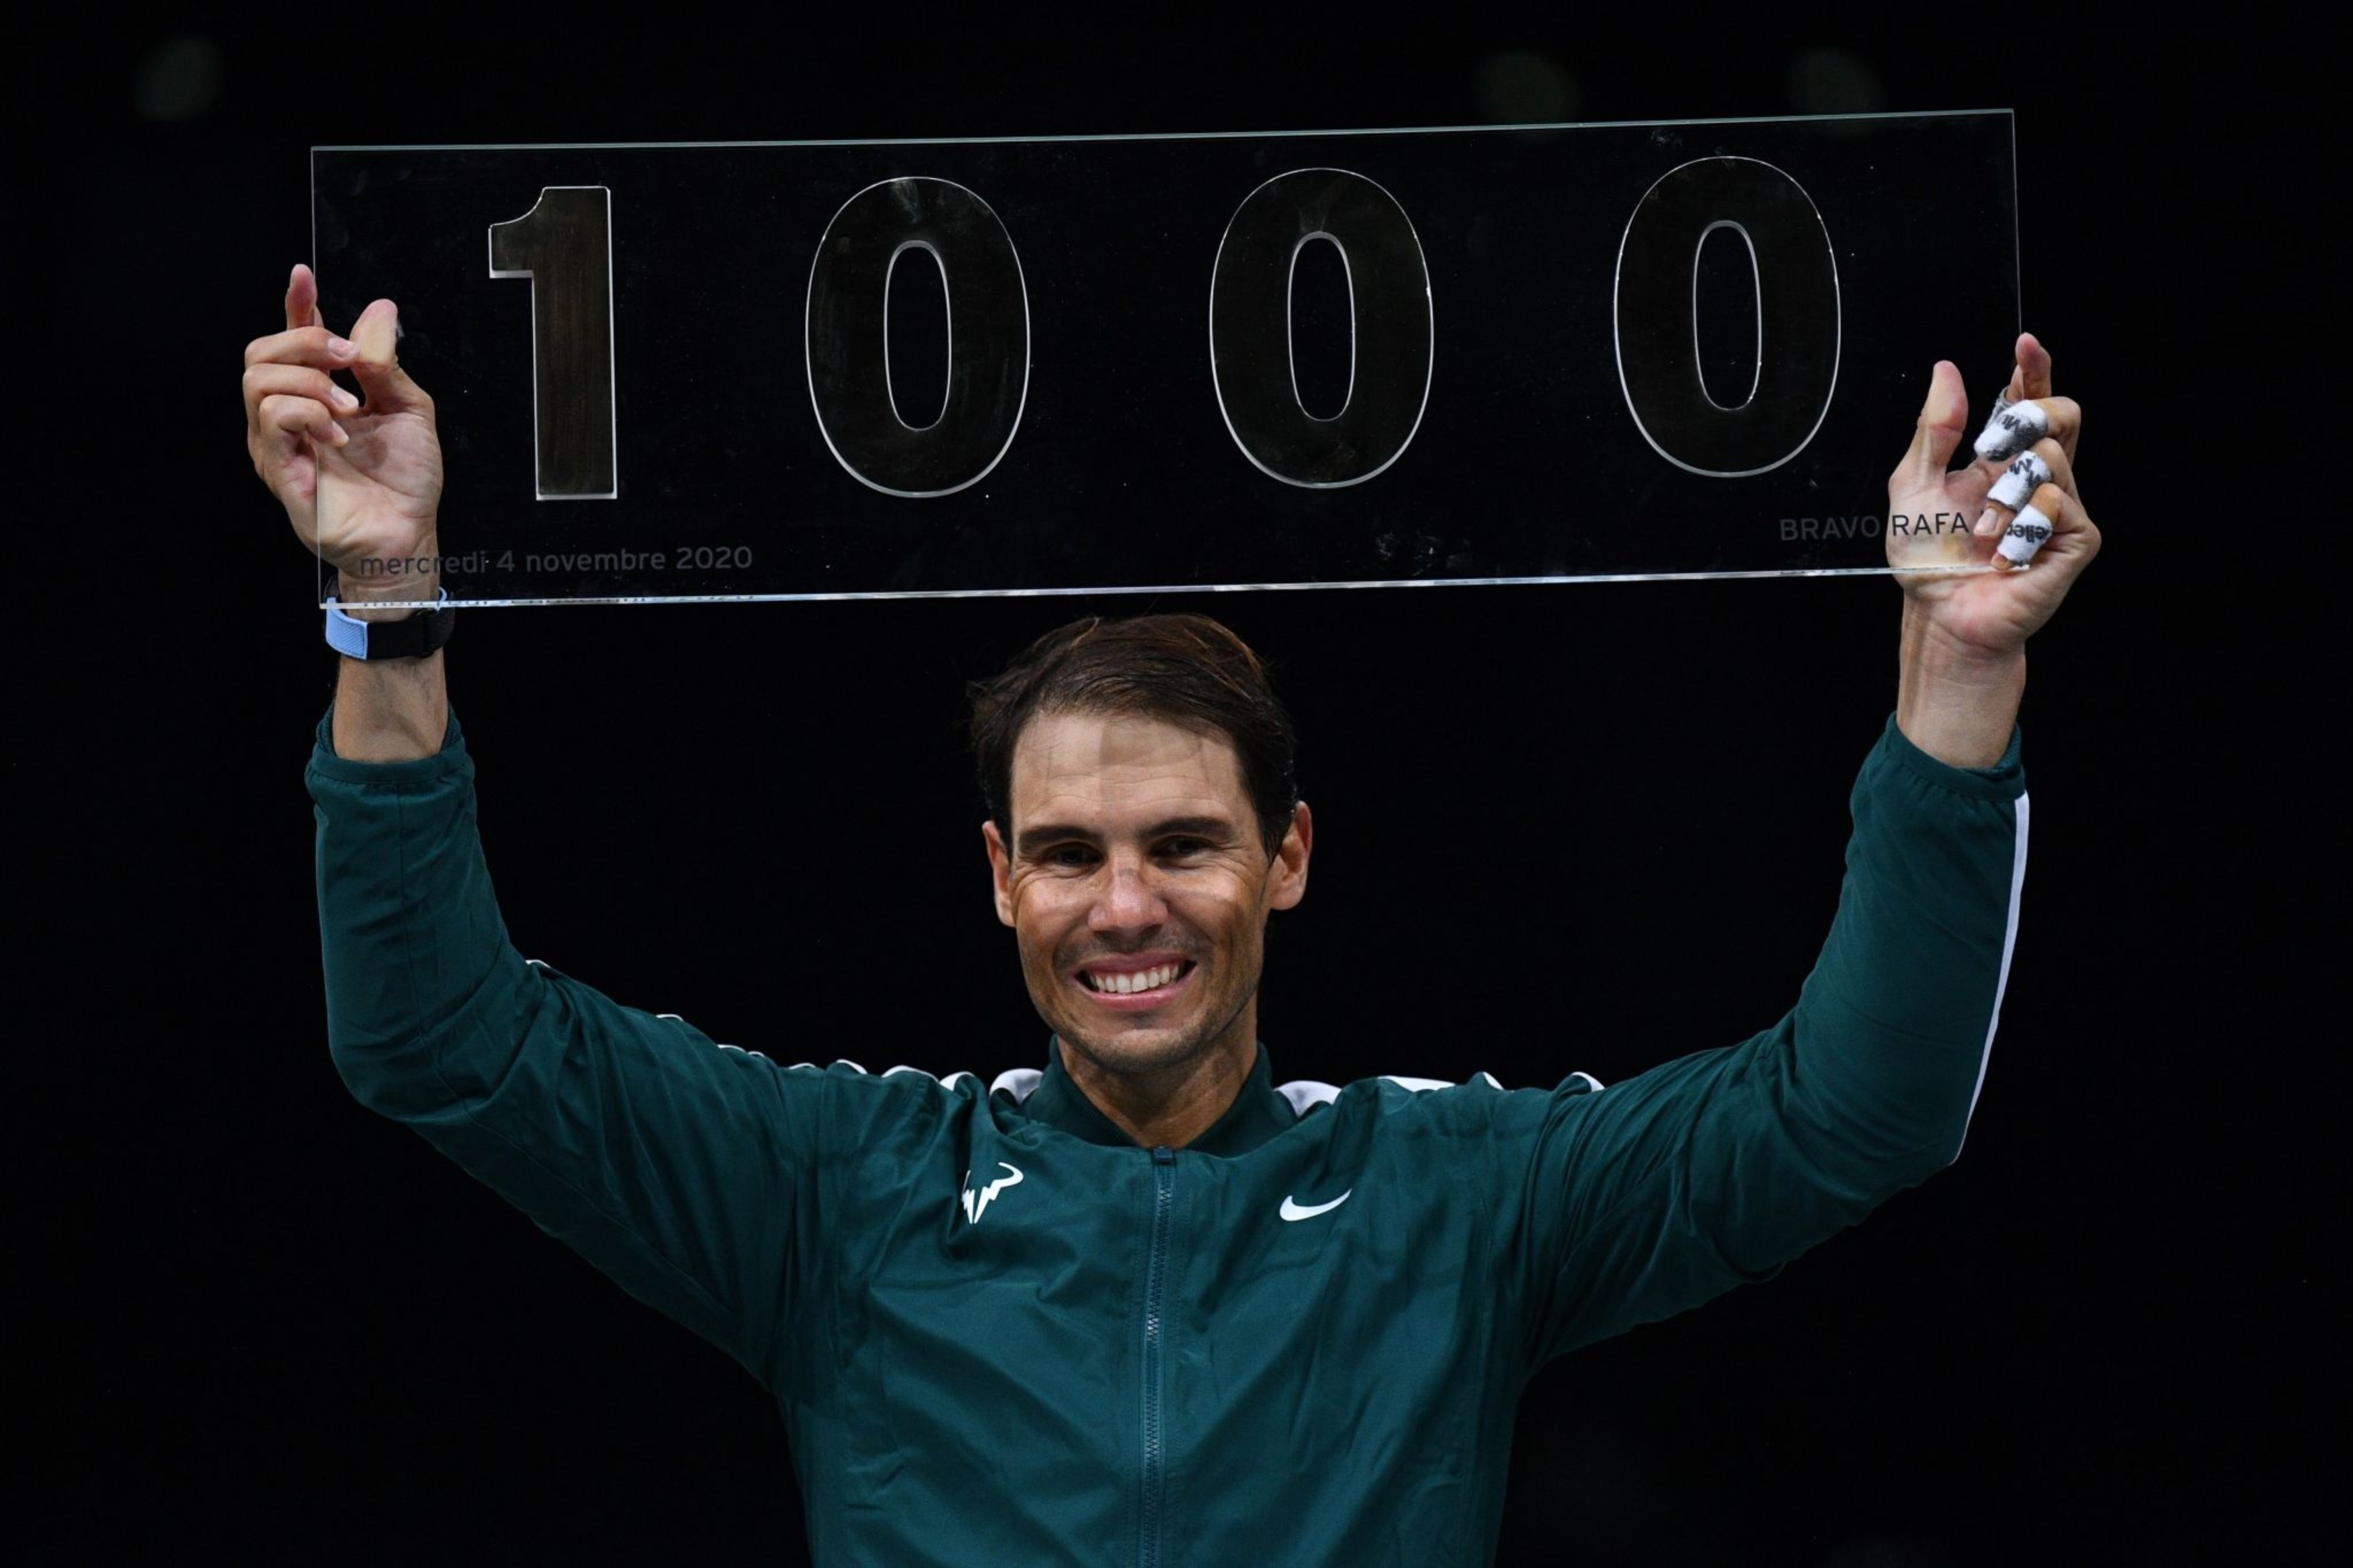 رافائل نادال و کسب هزارمین پیروزی در تنیس حرفه ای